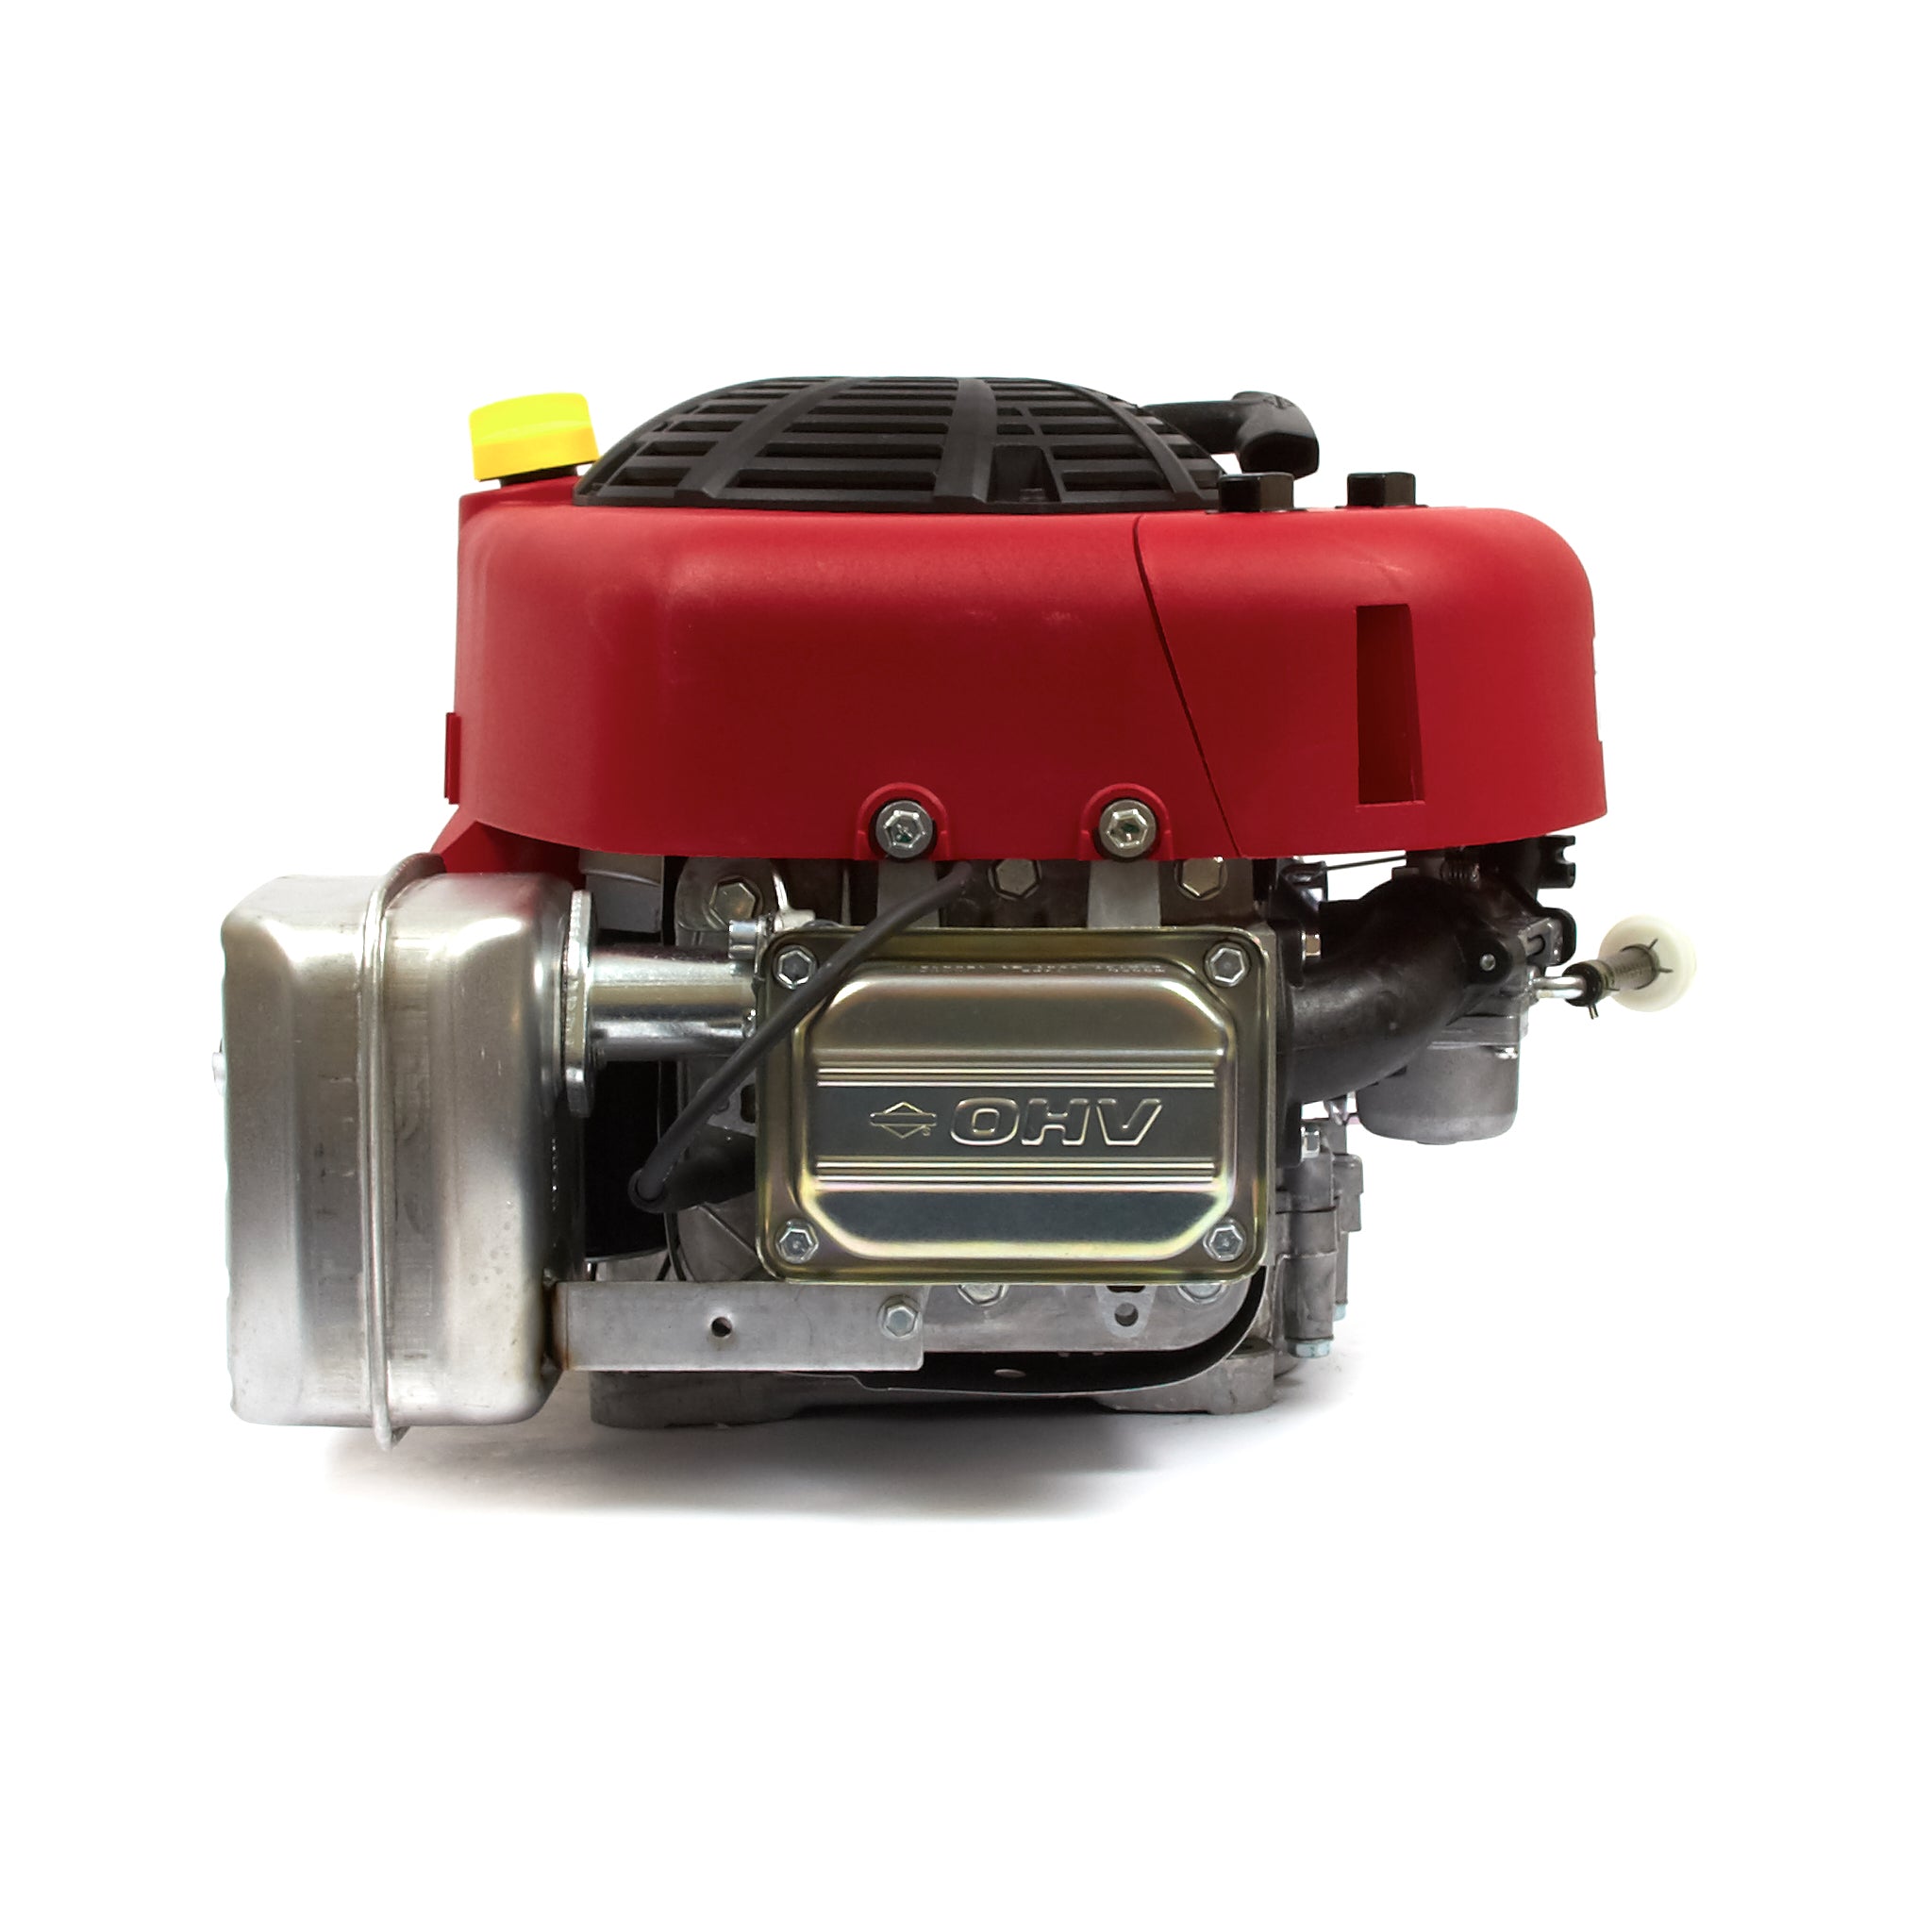 Durite essence moteur Briggs Stratton Intek 21,0 / 5210